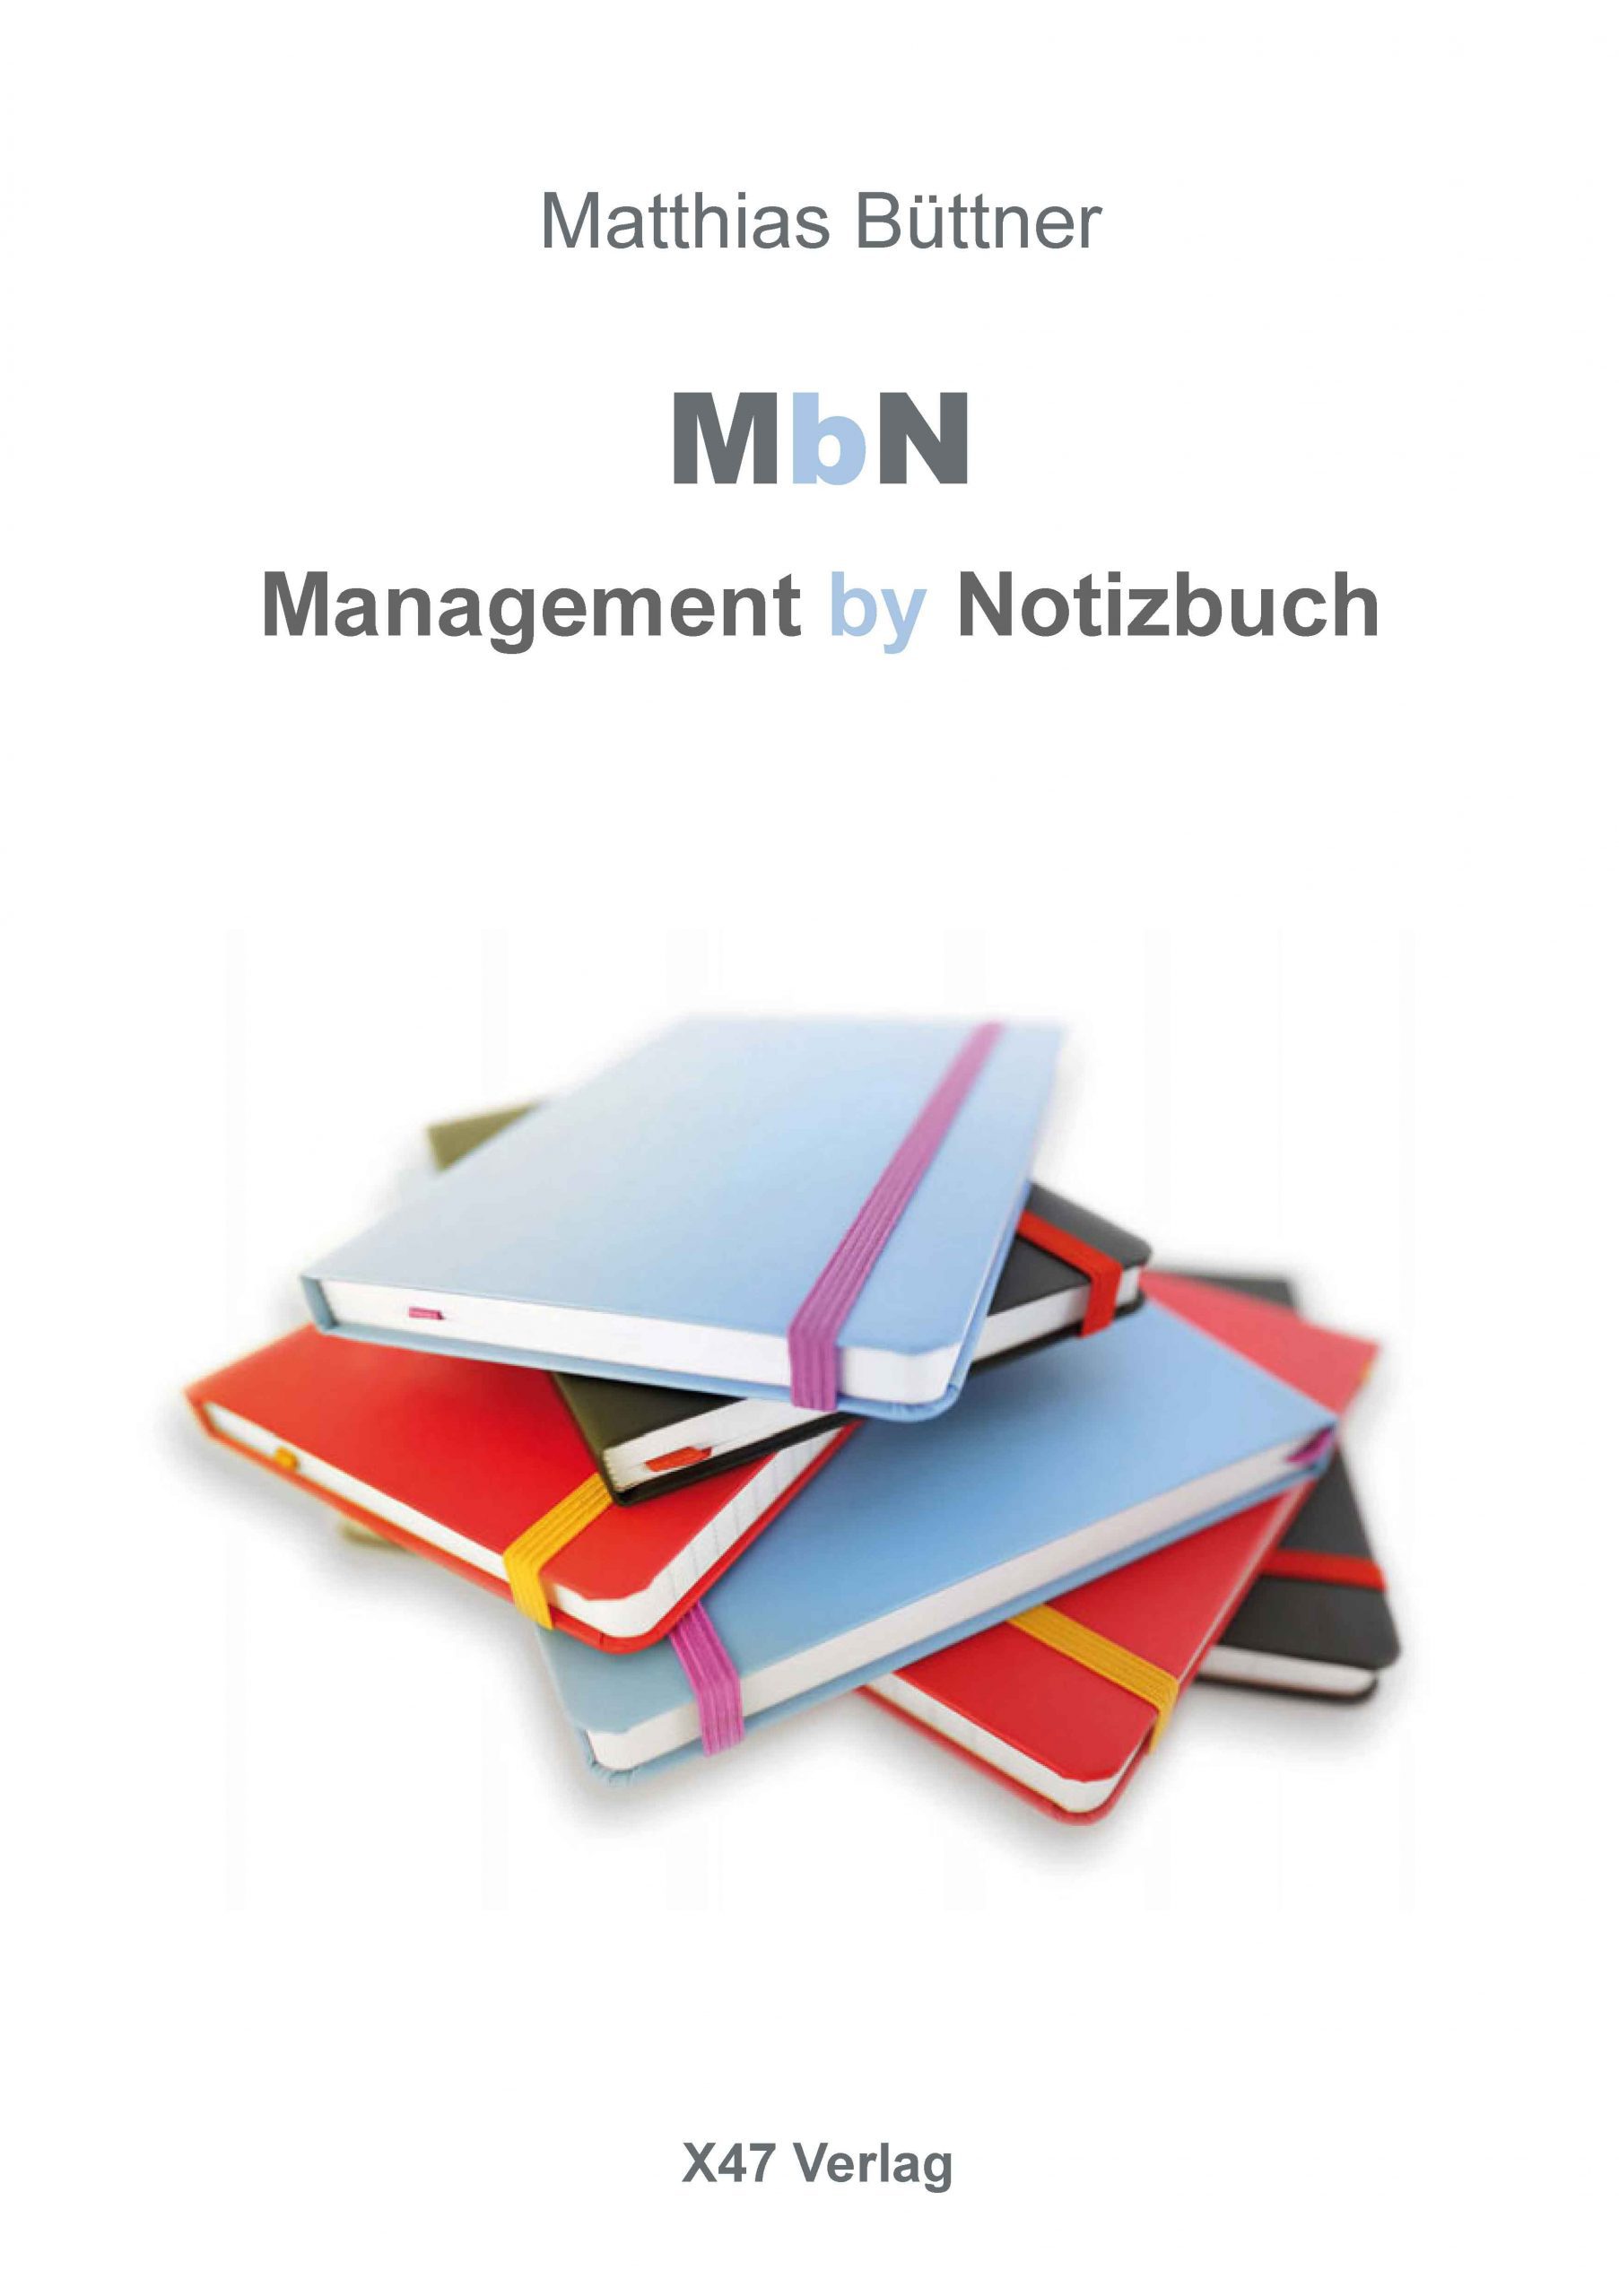 Matthias-Buettner-Management-by-Notizbuch_